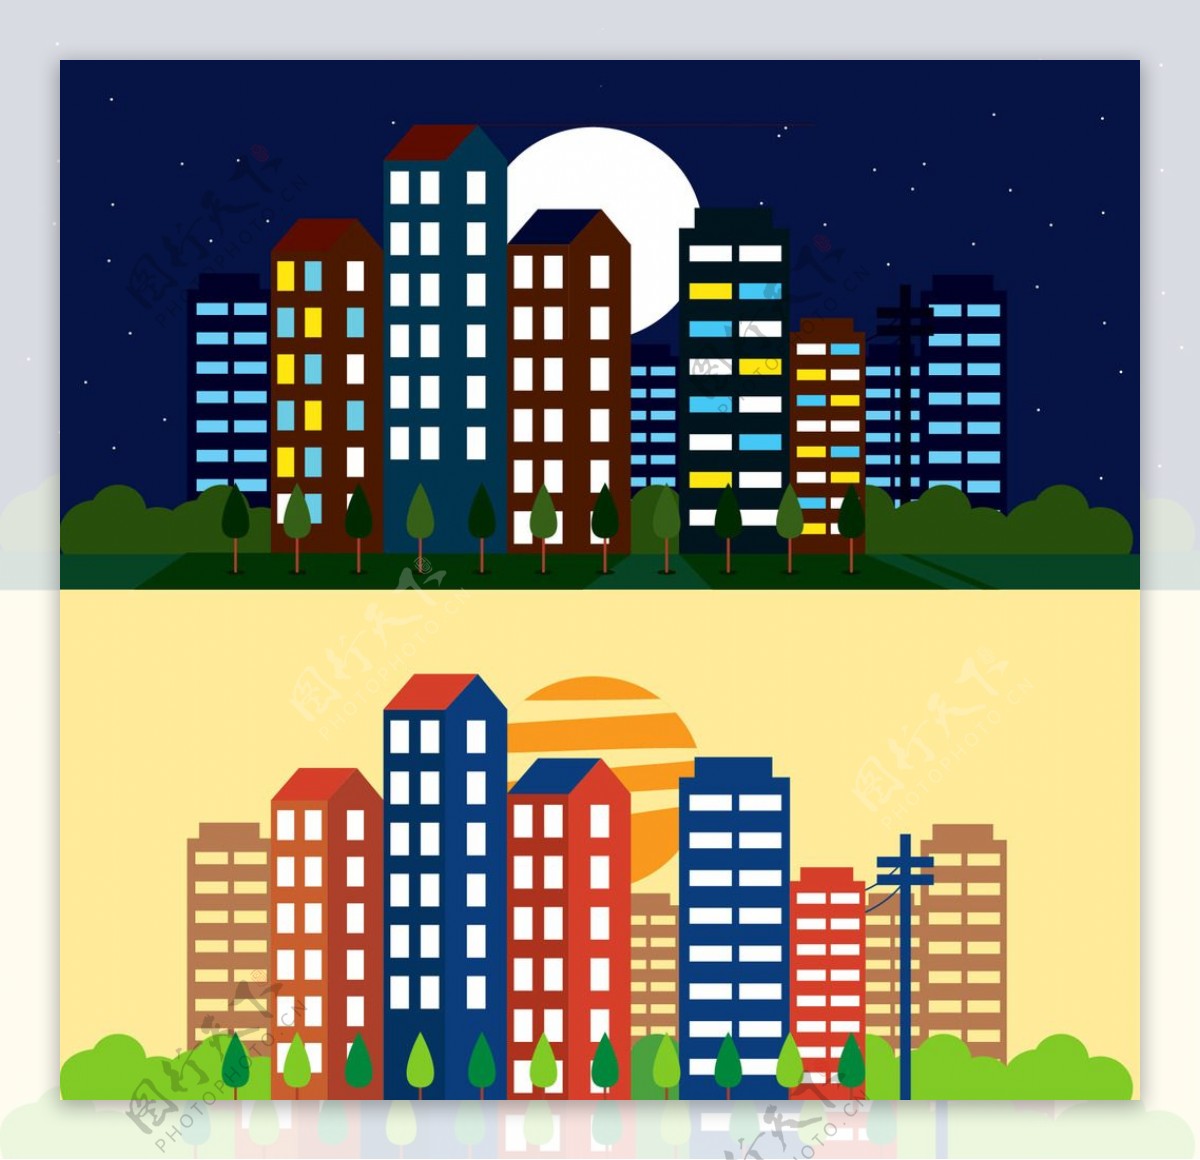 城市日景和夜景插图